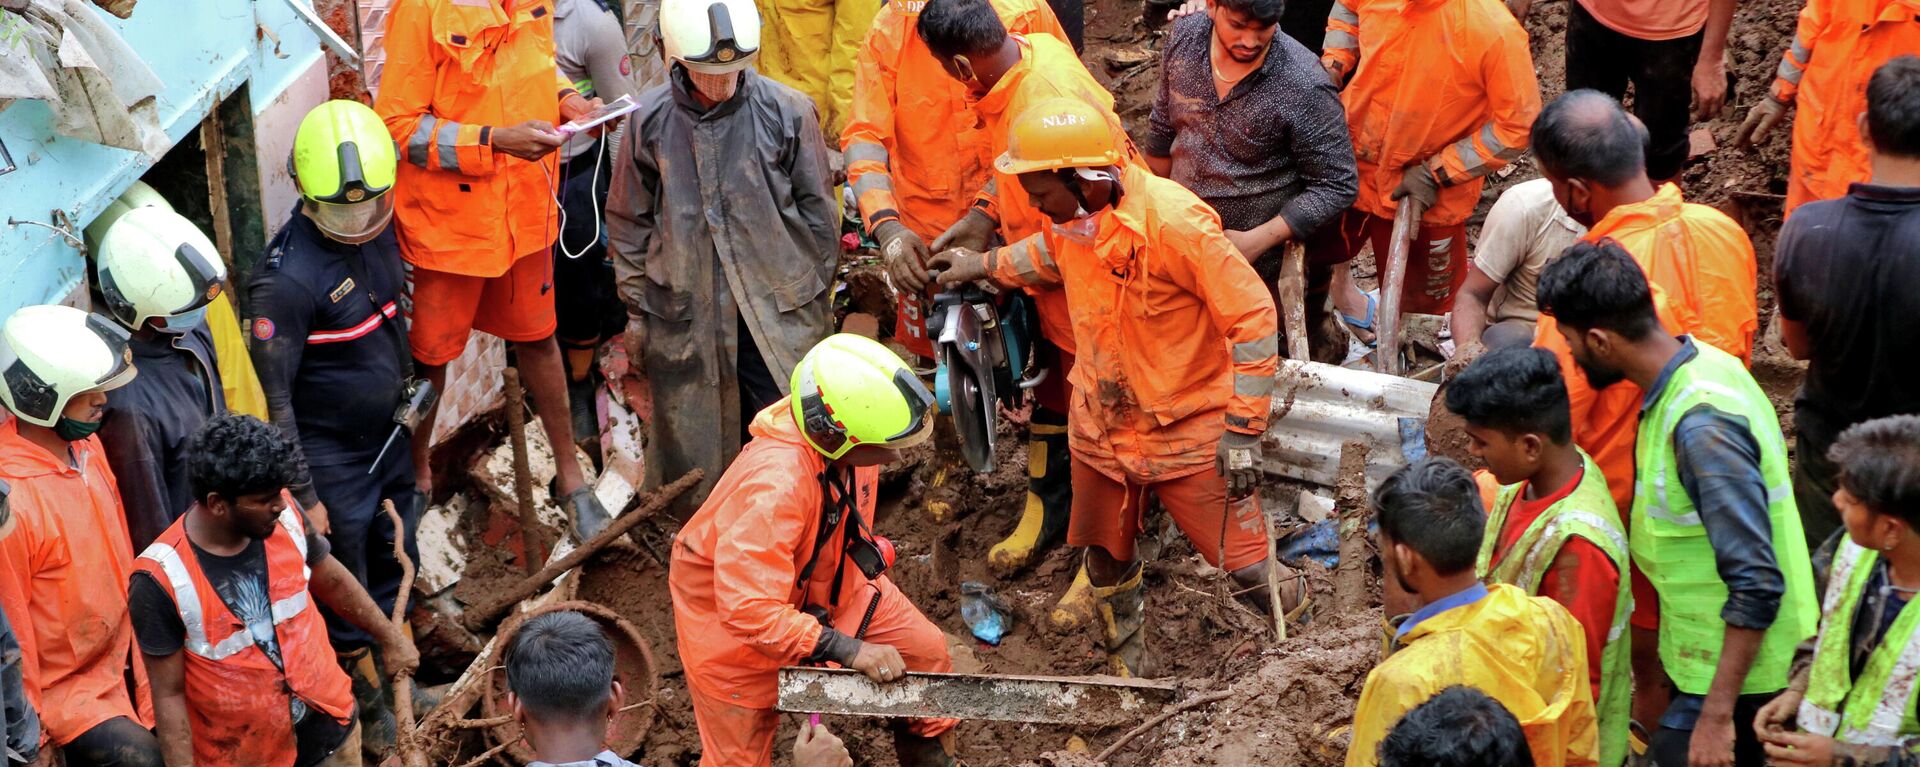 Los trabajadores de rescate retiran escombros mientras buscan sobrevivientes después de que una casa colapsara debido al deslizamiento de tierra causado por fuertes lluvias en Bombay, la India, el 18 de julio - Sputnik Mundo, 1920, 18.07.2021